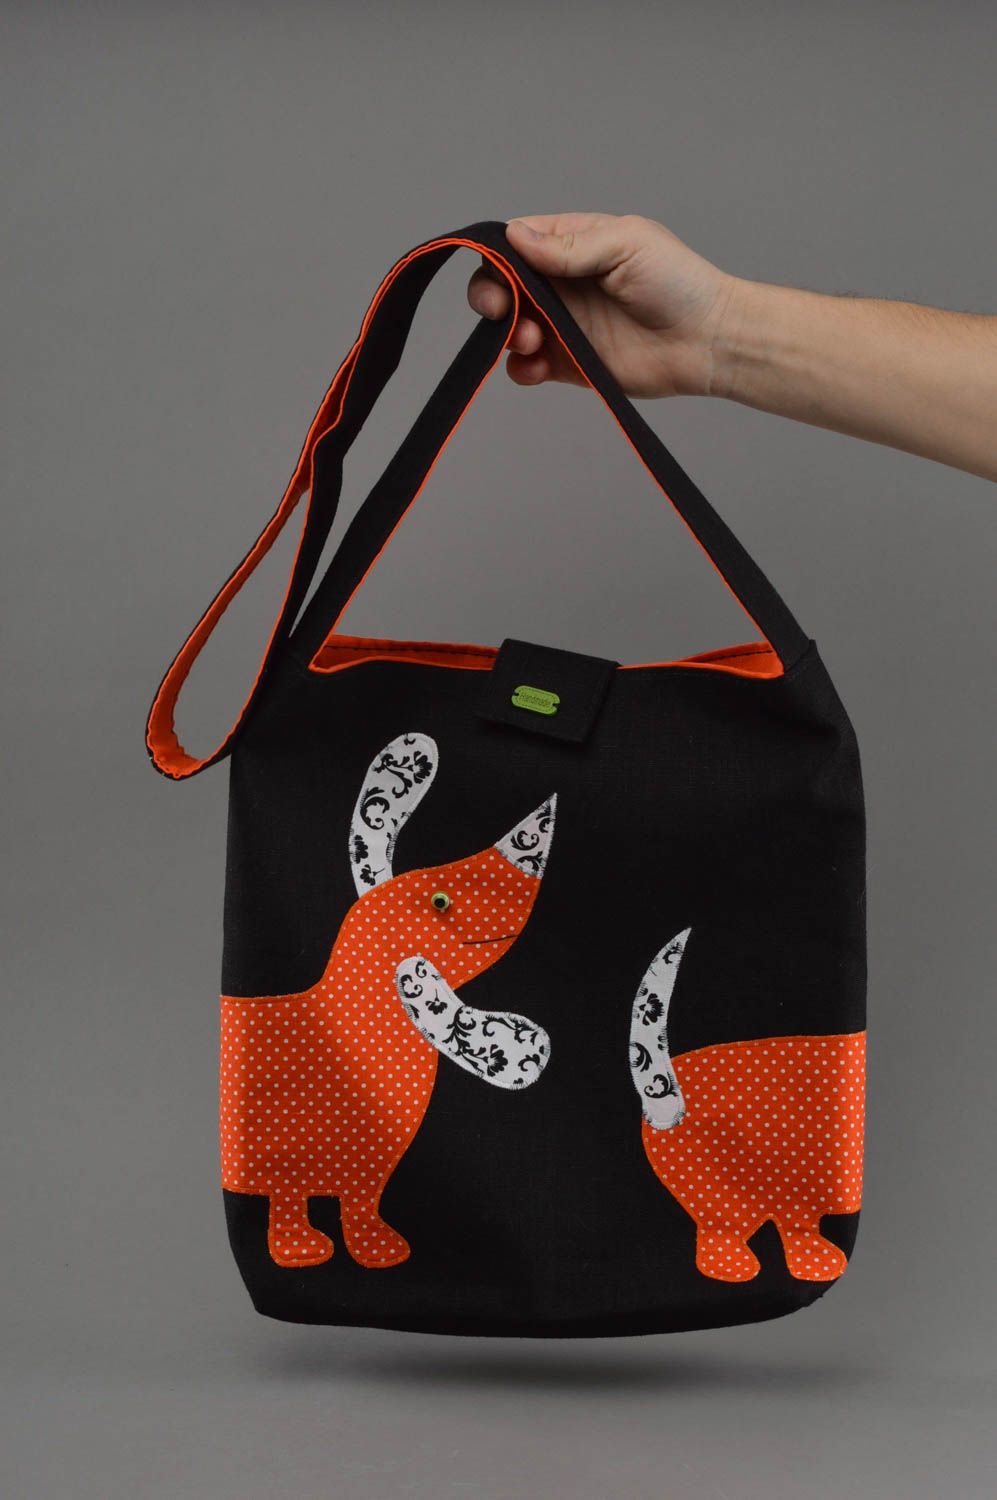 Öko Tasche aus Stoff handmade schwarz orange mit gepunkteten Dackeln schön foto 4